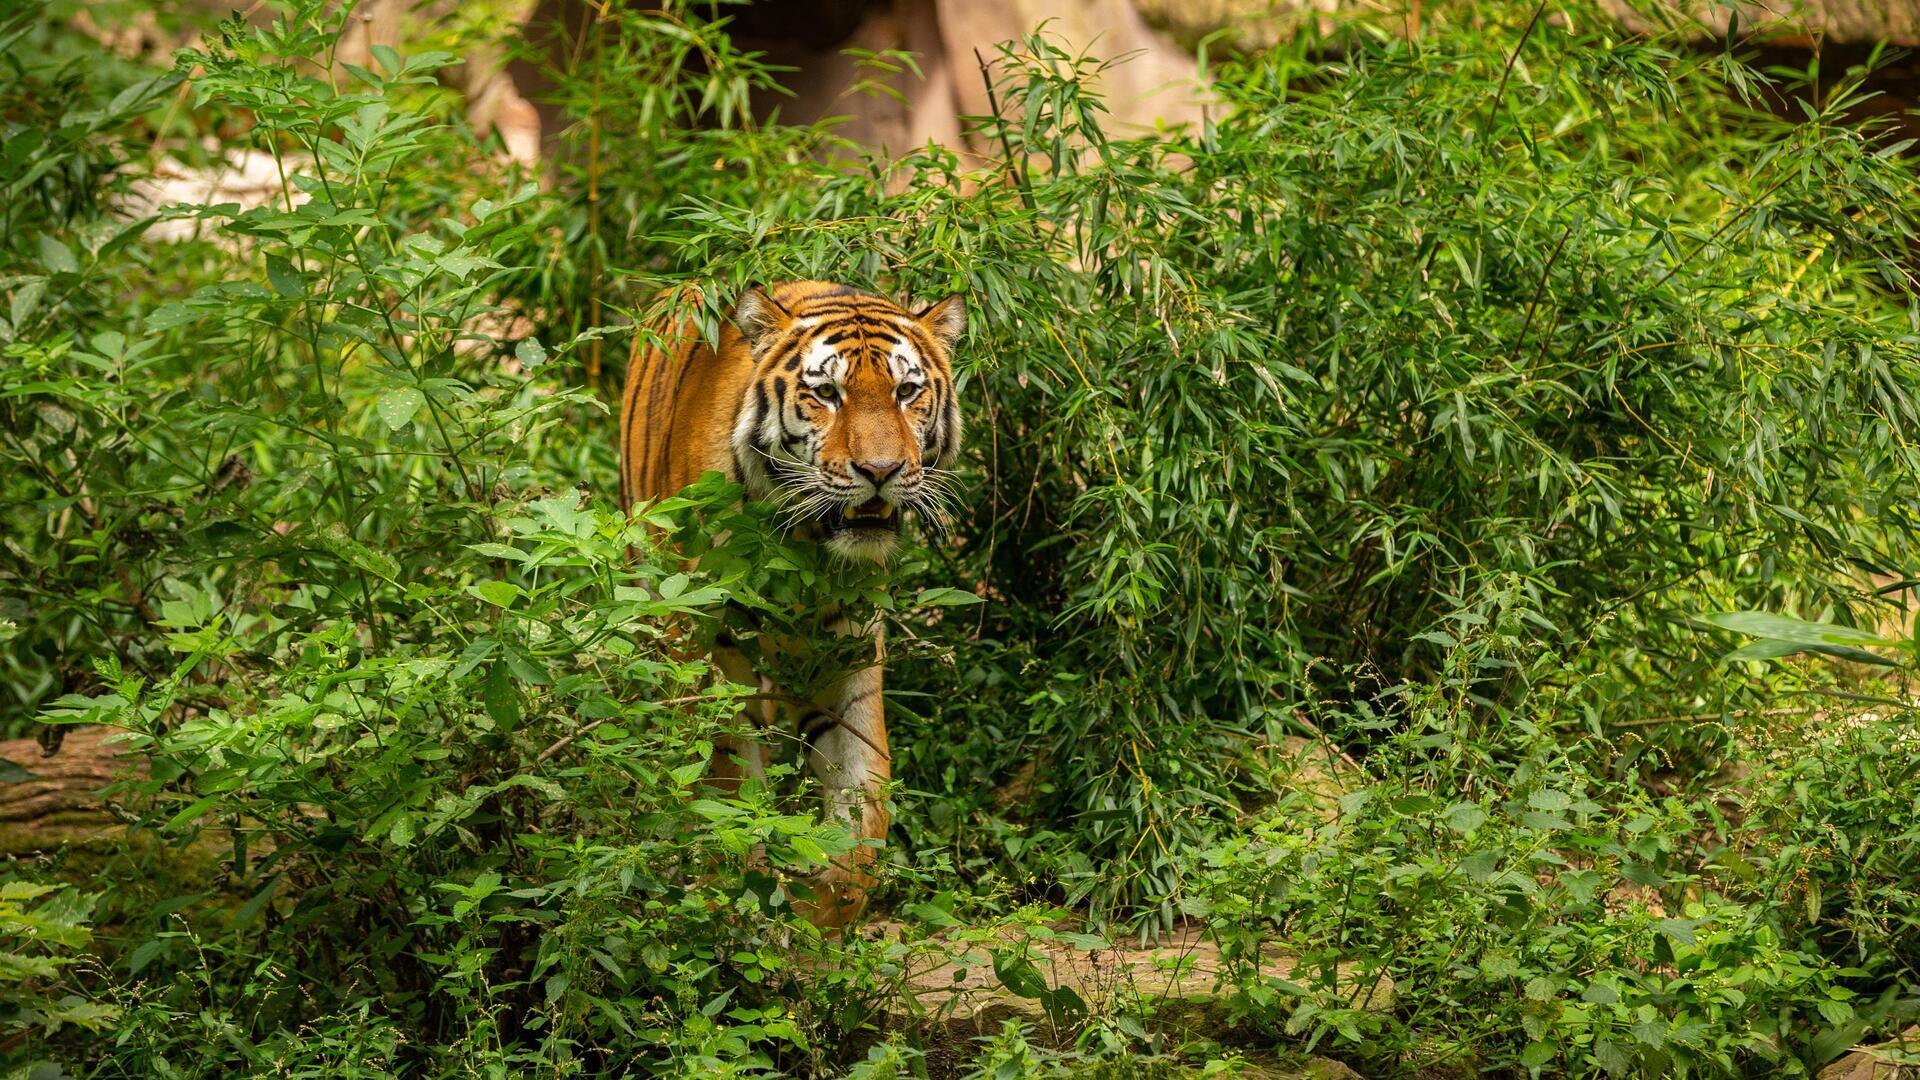 उत्तर प्रदेश: लखीमपुर खीरी के गांव में बाघ का खौफ, 1 युवक को मारा  